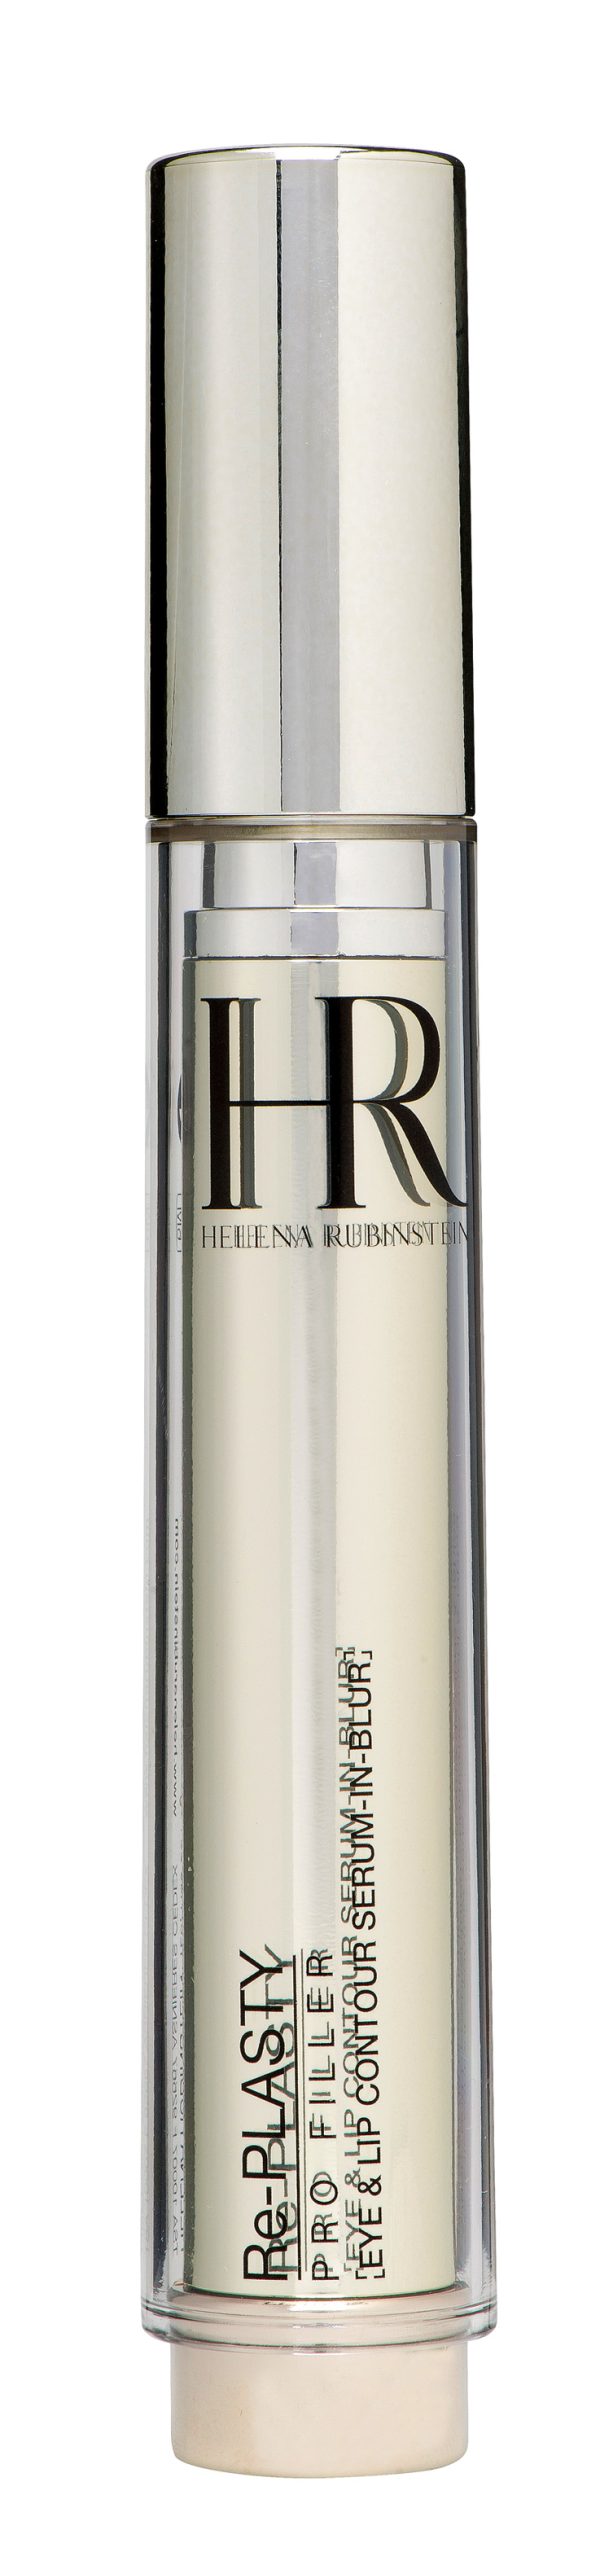 Re-Plasty Pro Filler Contour des yeux et lèvres, serum-in-blur, Helena Rubinstein, env. 209 fr. les 15 ml.